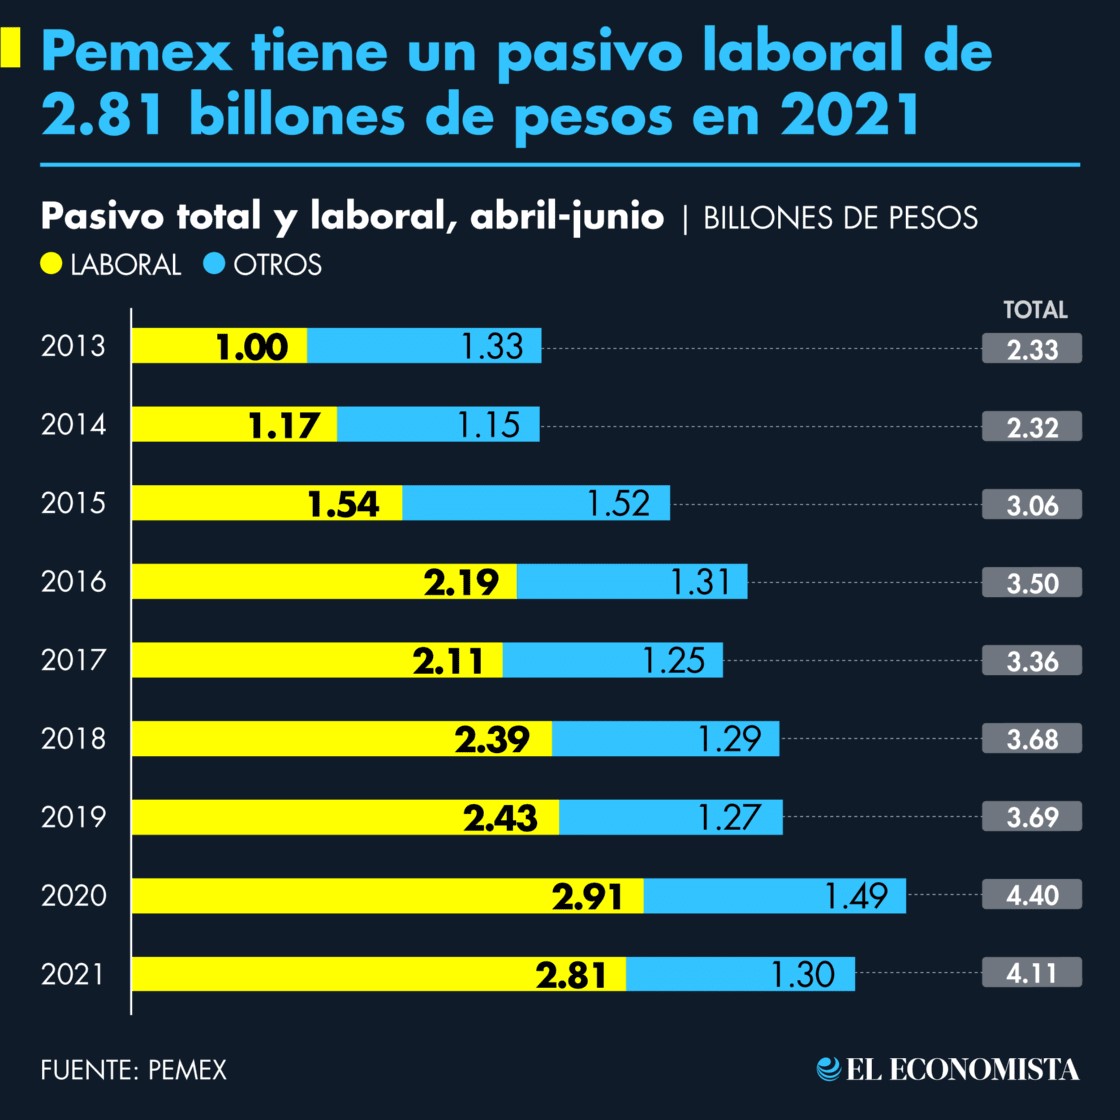 Pemex tiene un pasivo laboral de 2.81 billones de pesos en 2021